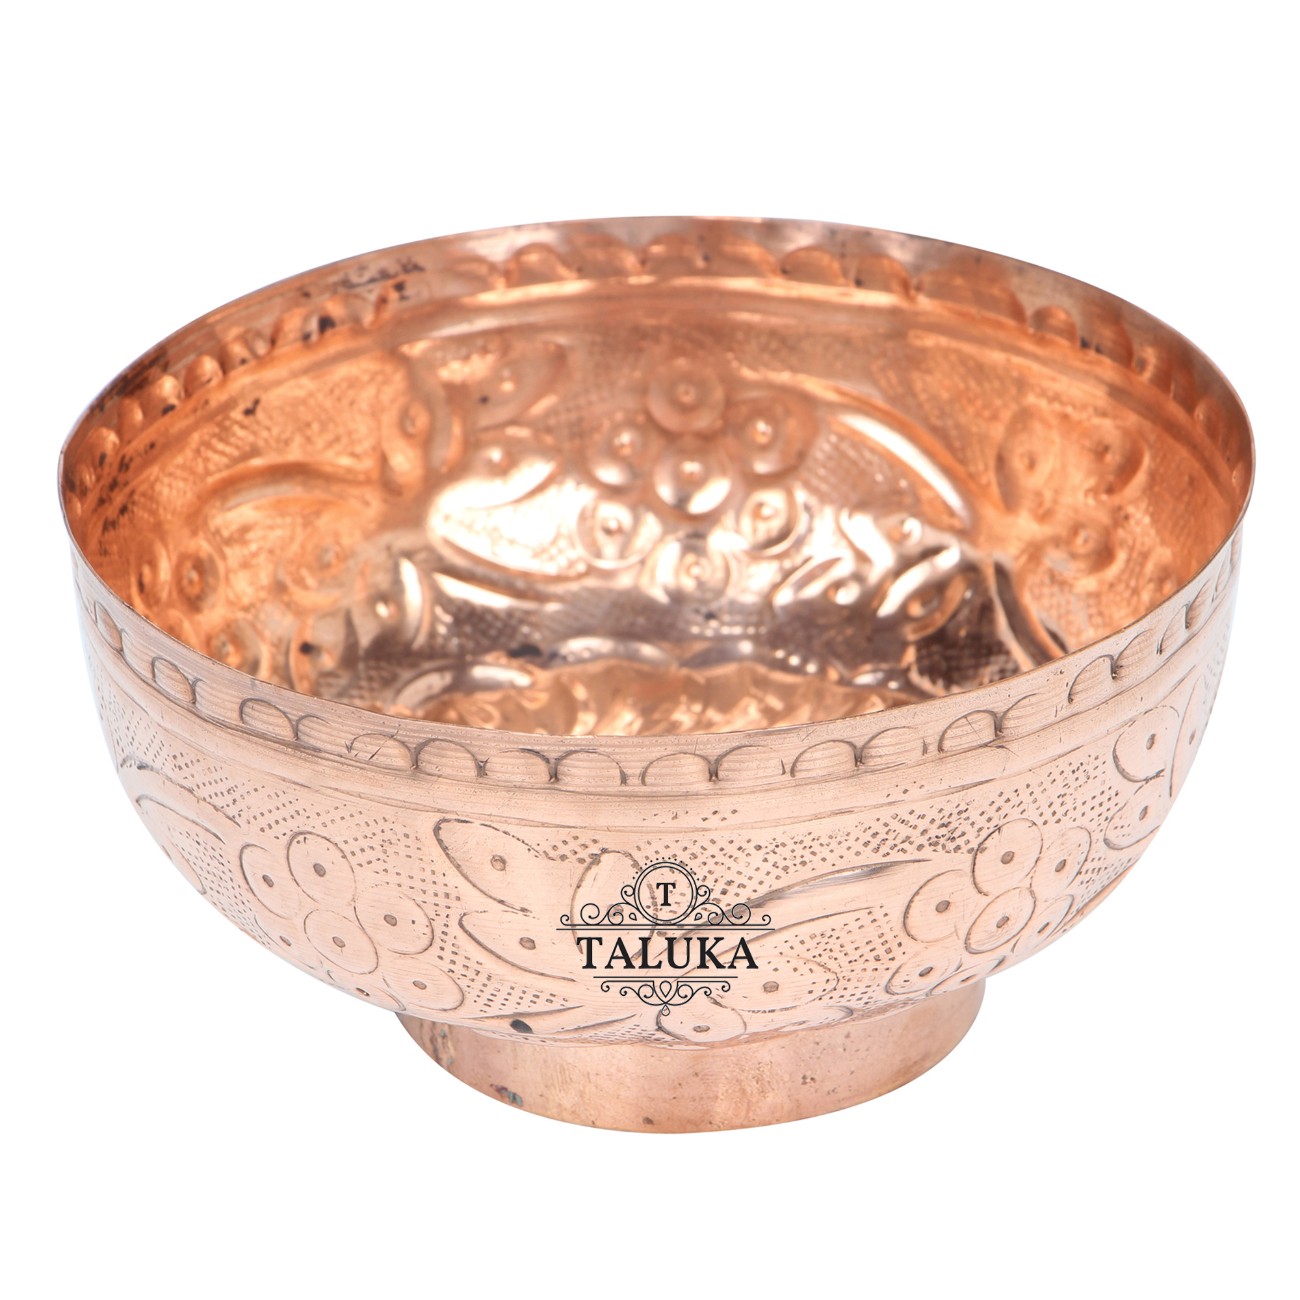 Copper Embossed Design Serving Desert Bowl For Tableware Restaurant Home Hotel